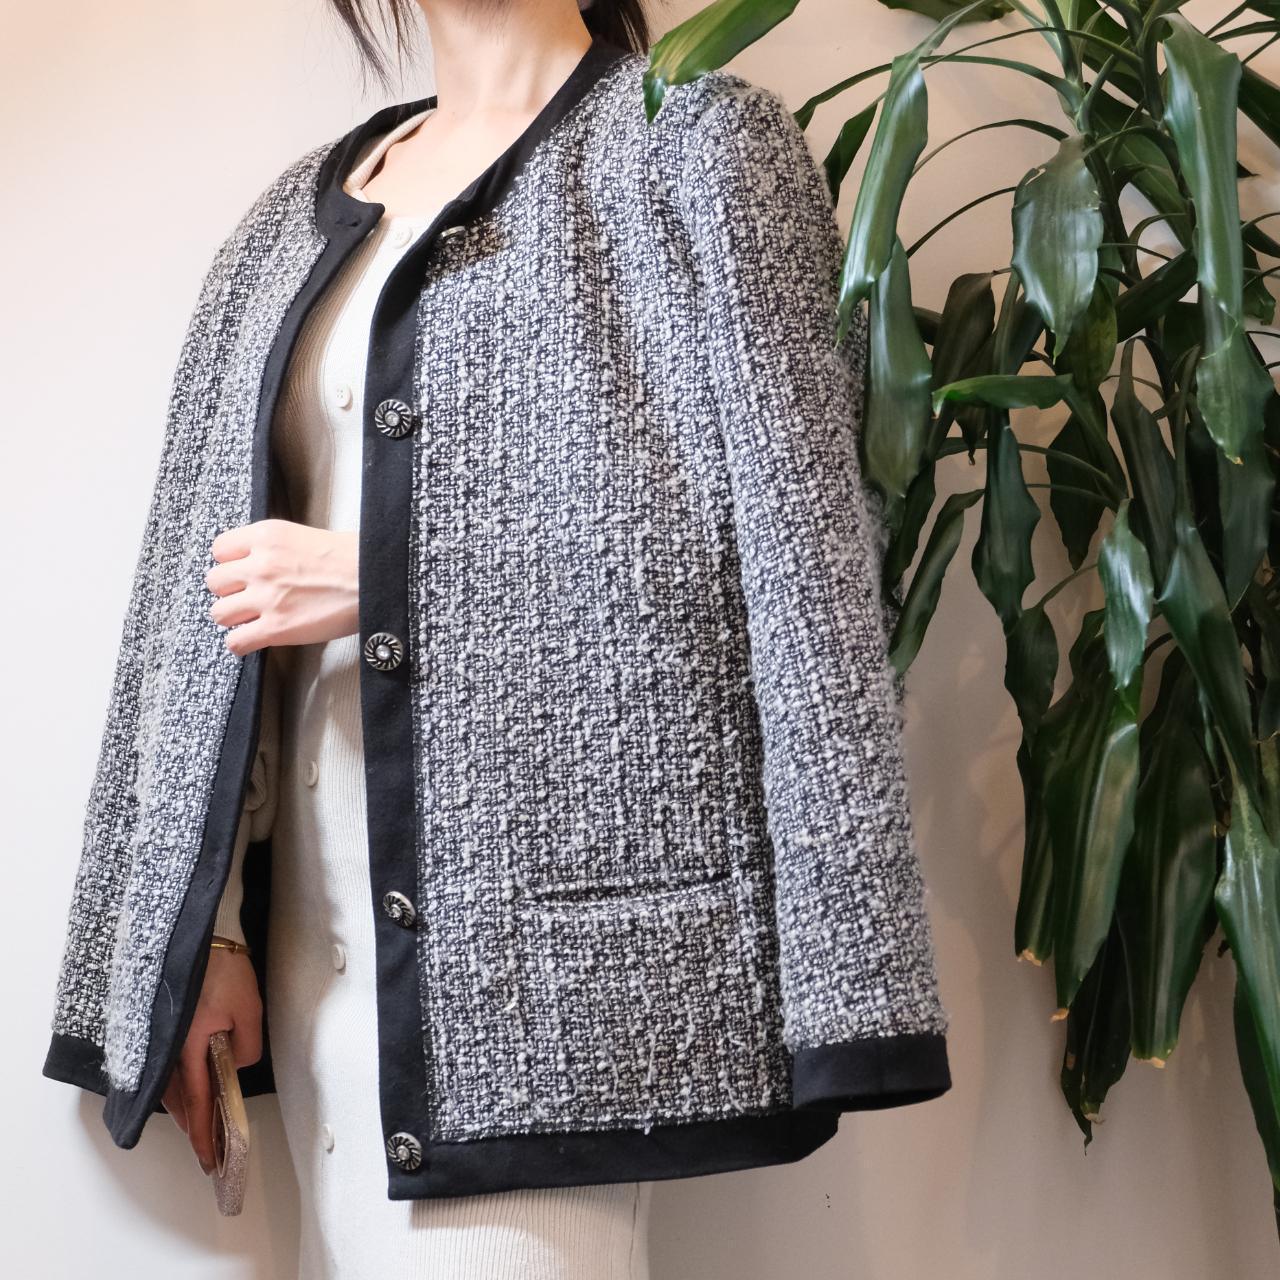 Unbranded vintage grey wool mix tweed jacket